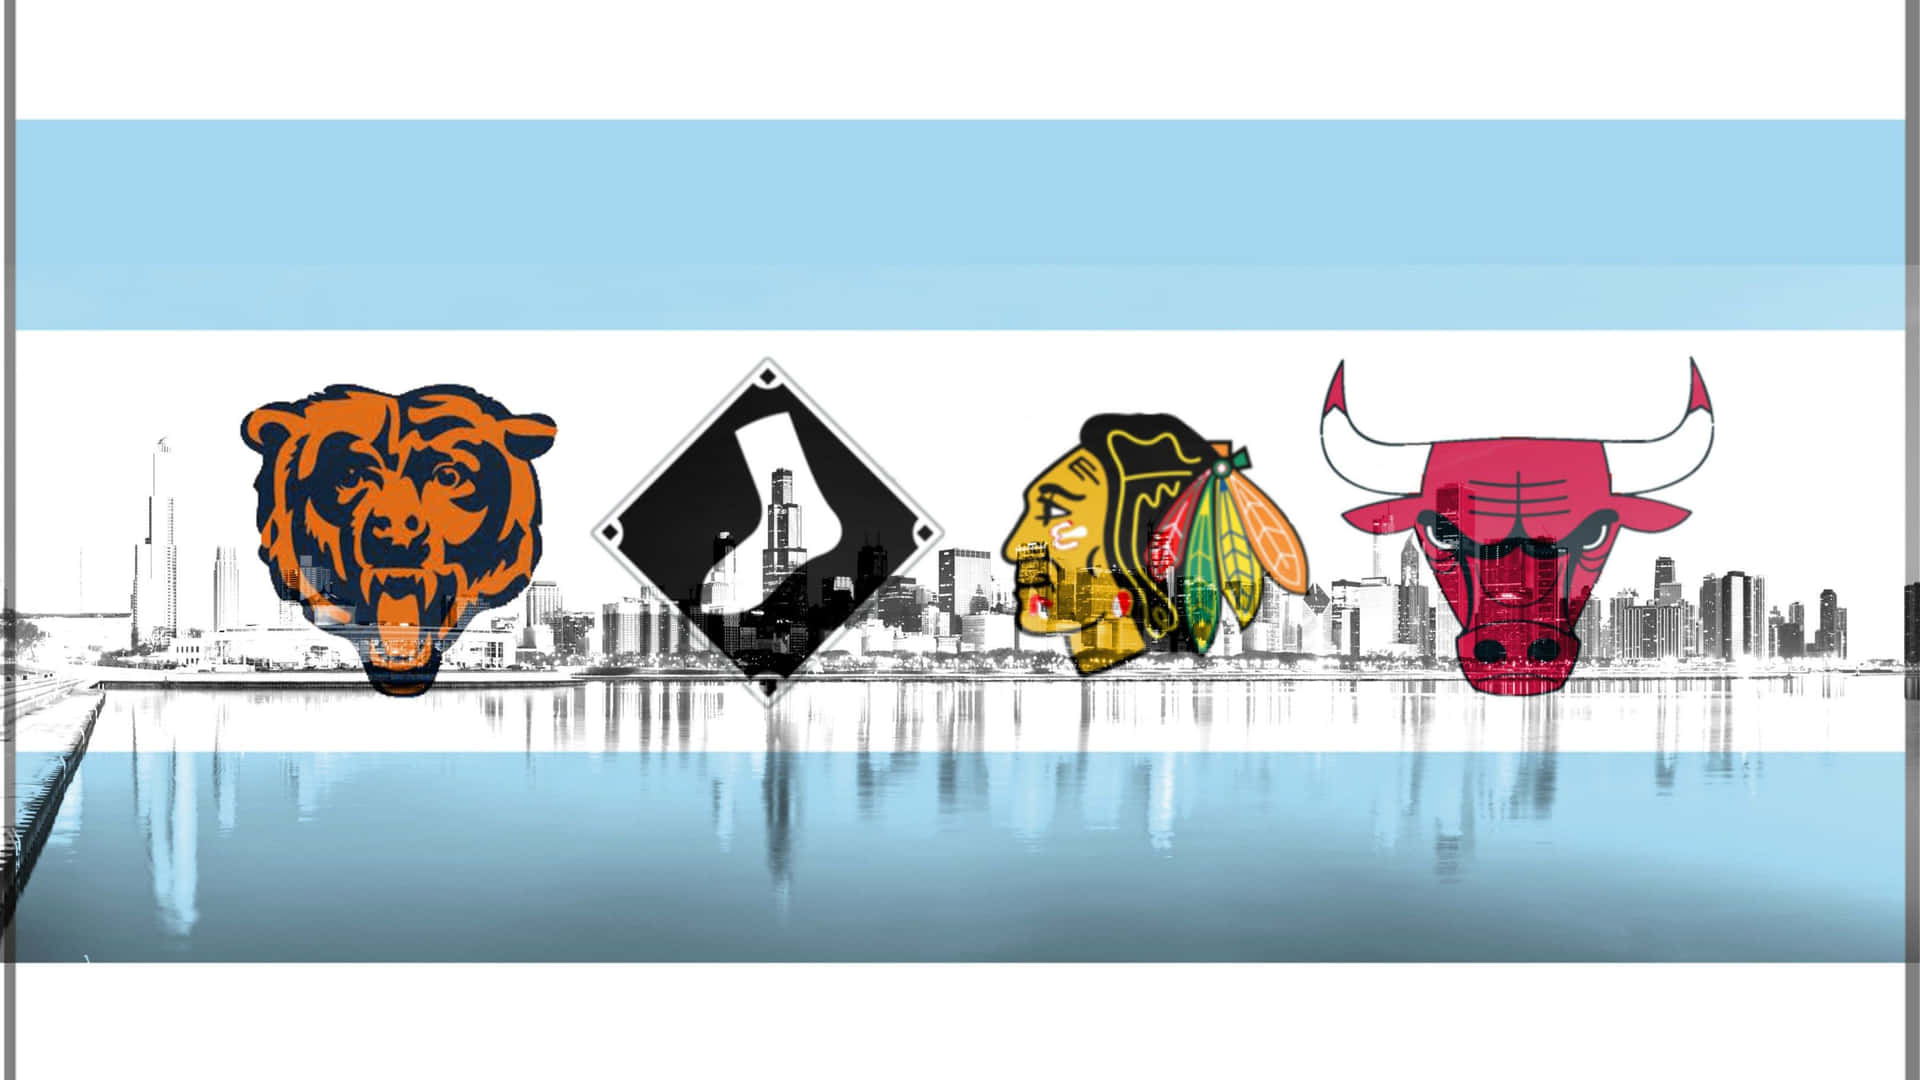 Vis din loyalitet til den chicagoanske sports scene! Wallpaper